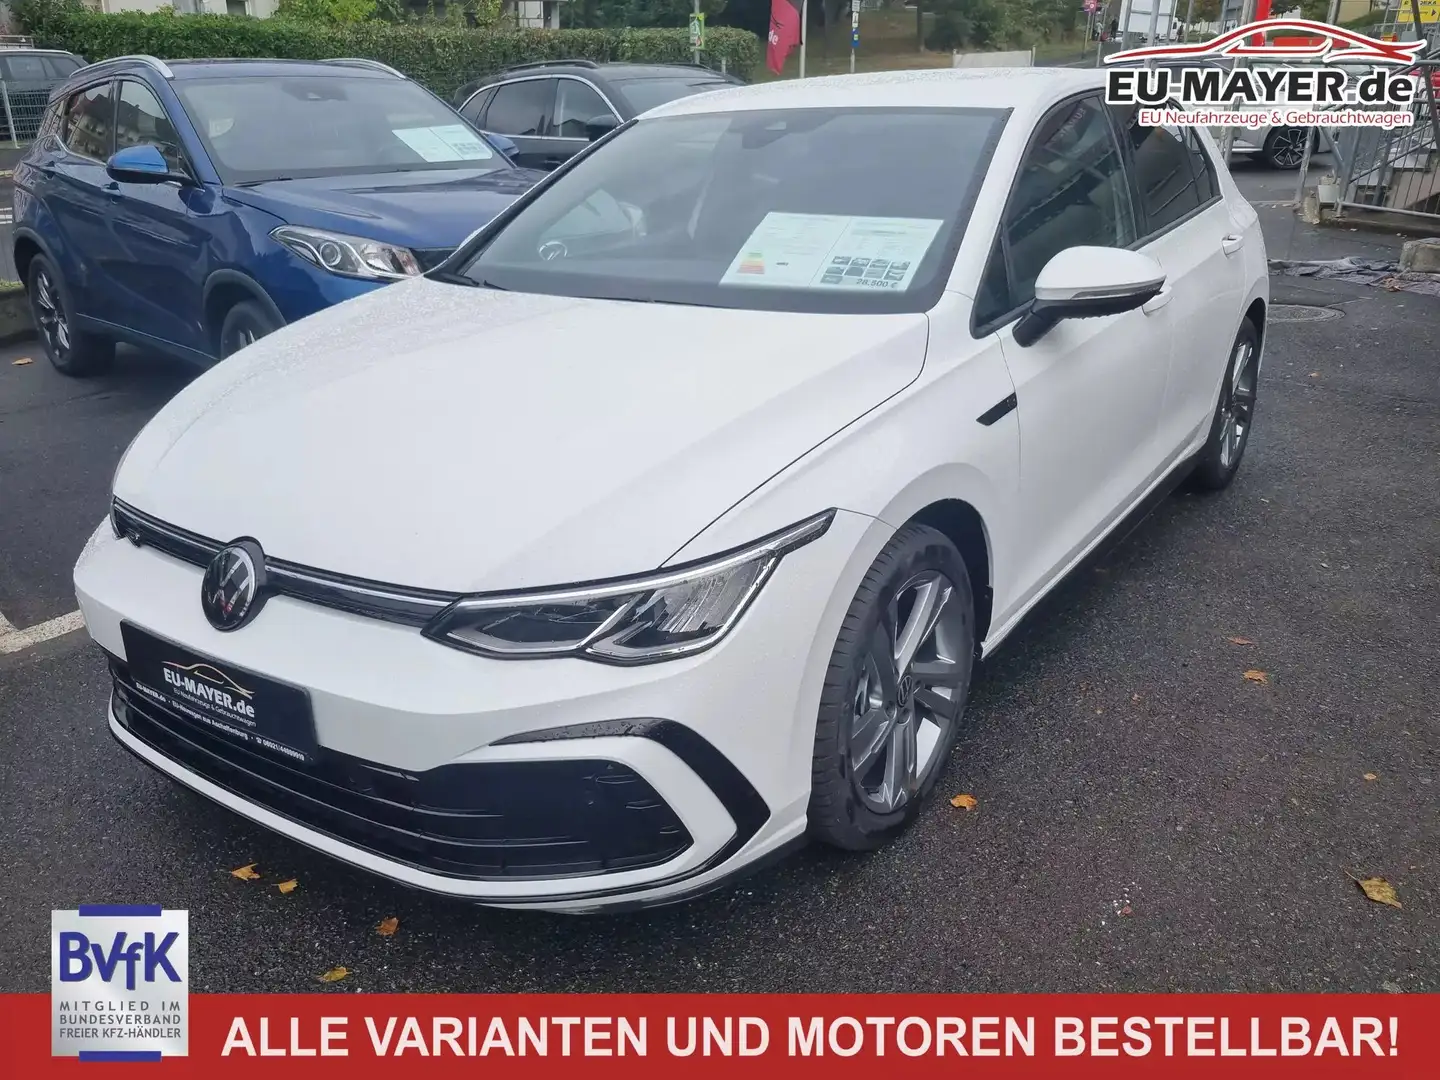 Volkswagen Golf Limousine in Weiß neu in Aschaffenburg für € 27.500